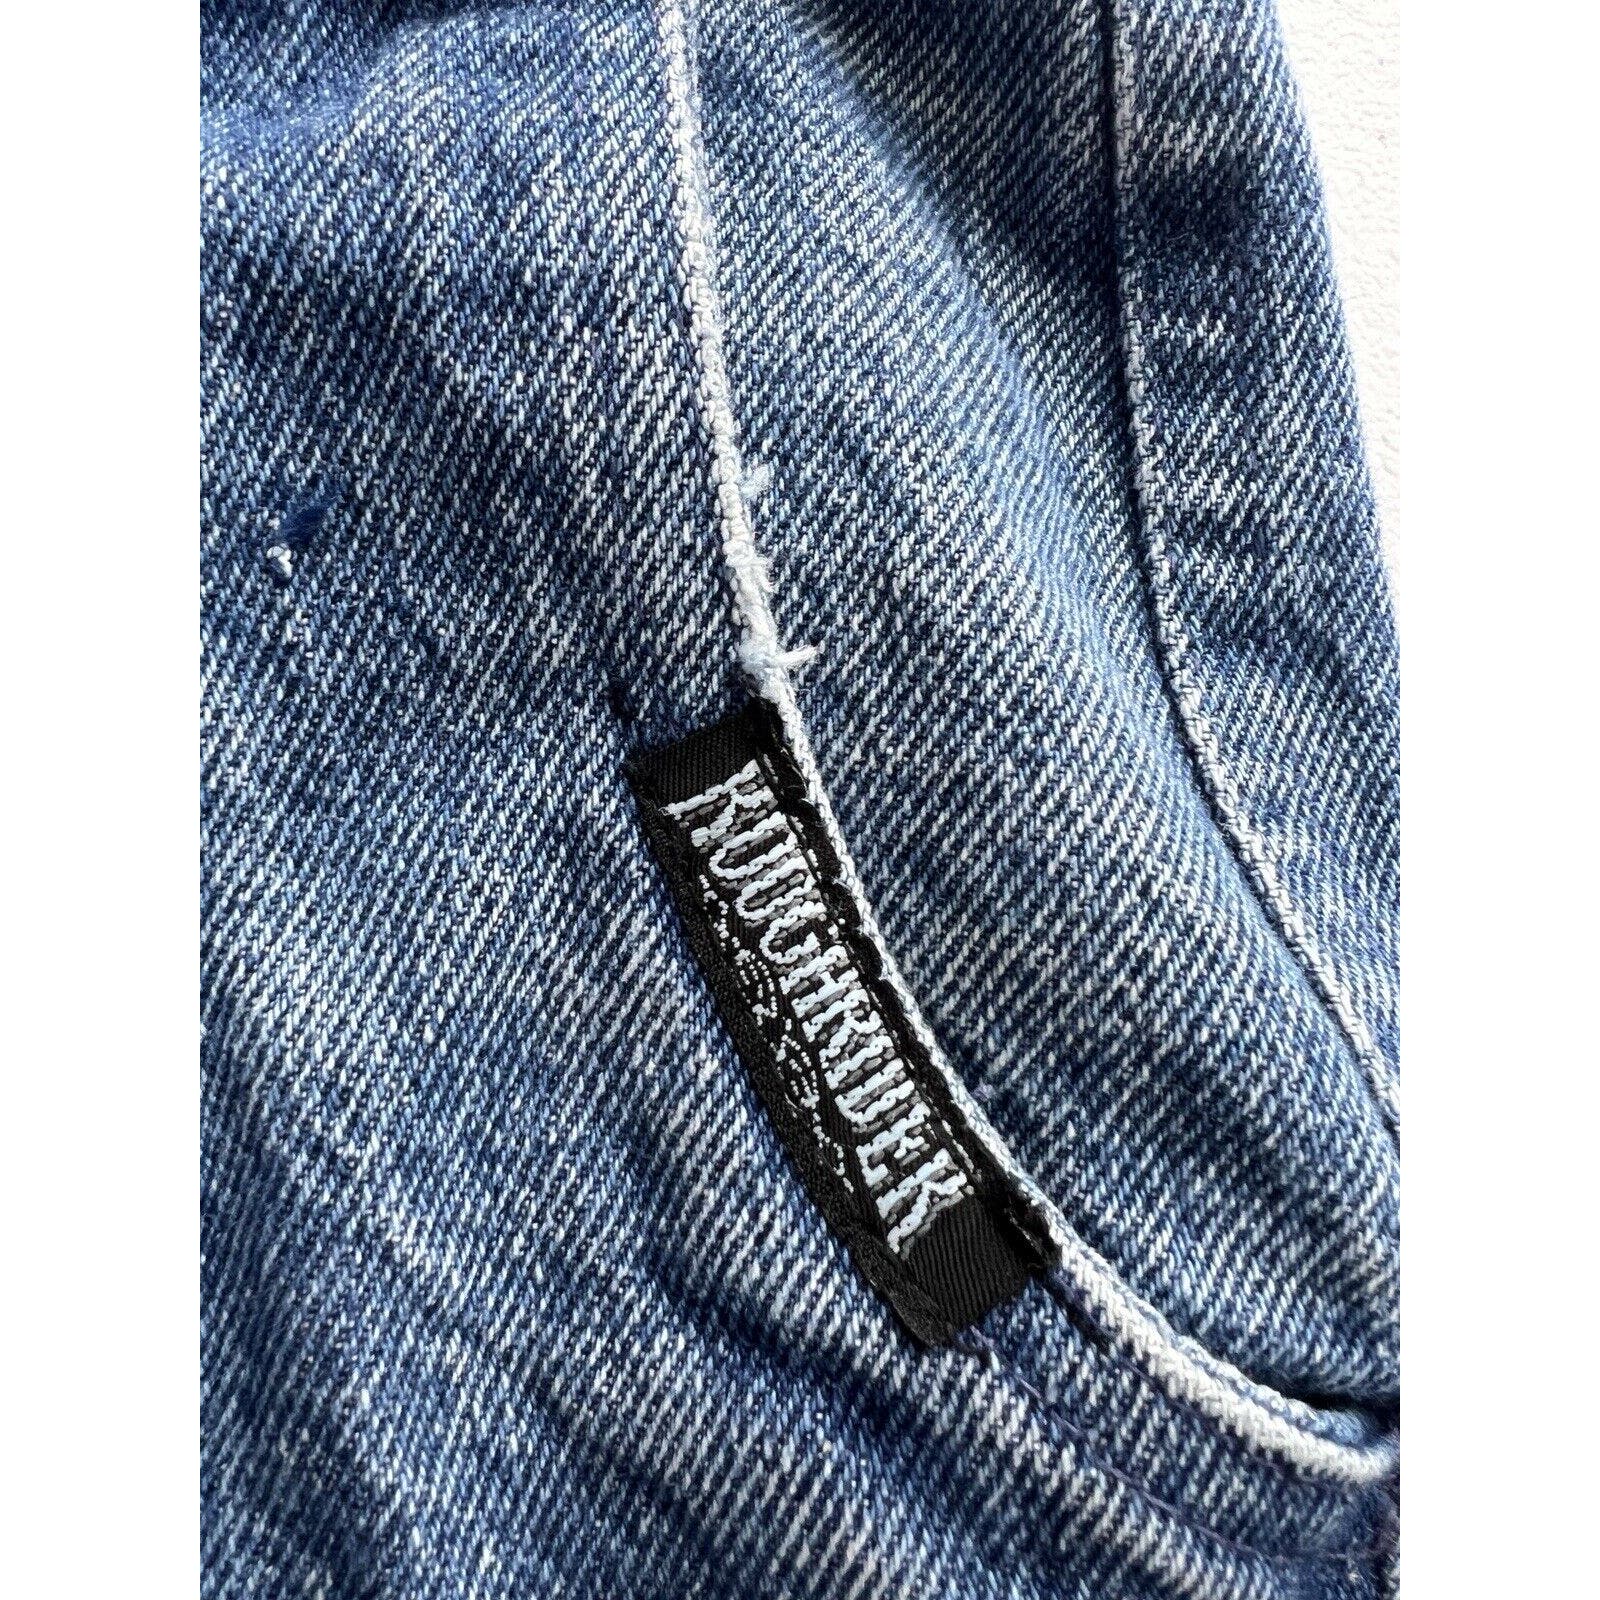 Vintage Roughrider Women’s 7 / 8 High Waist Western Jeans Medium Wash 26x31